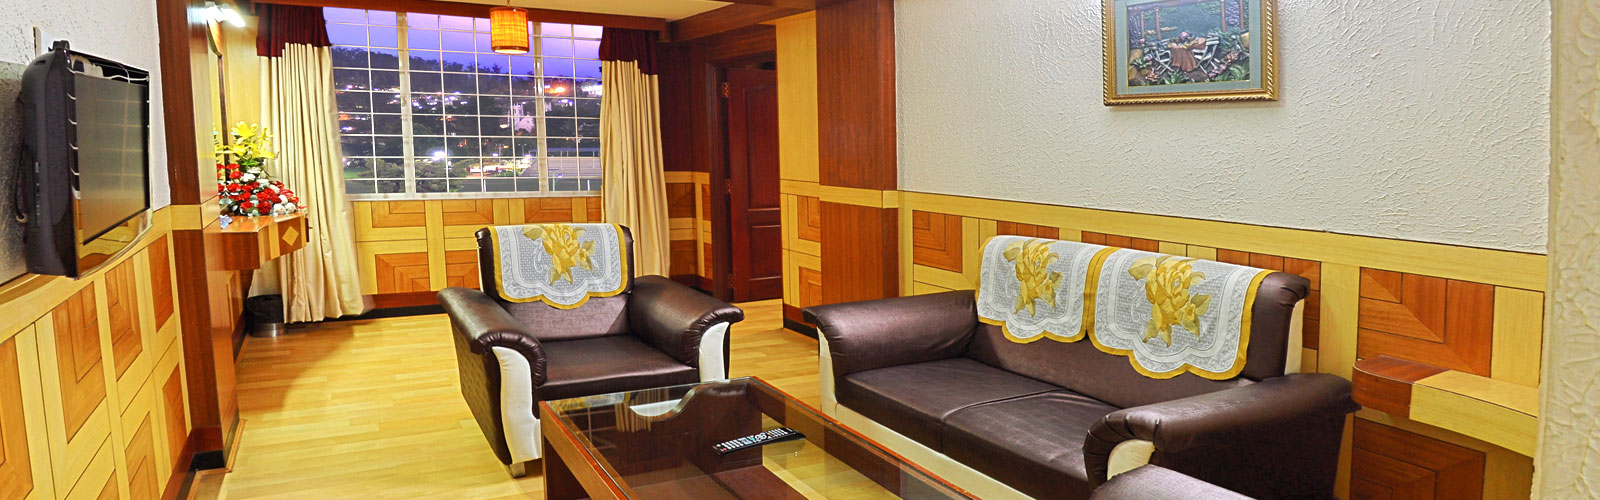  luxury  rooms in ooty